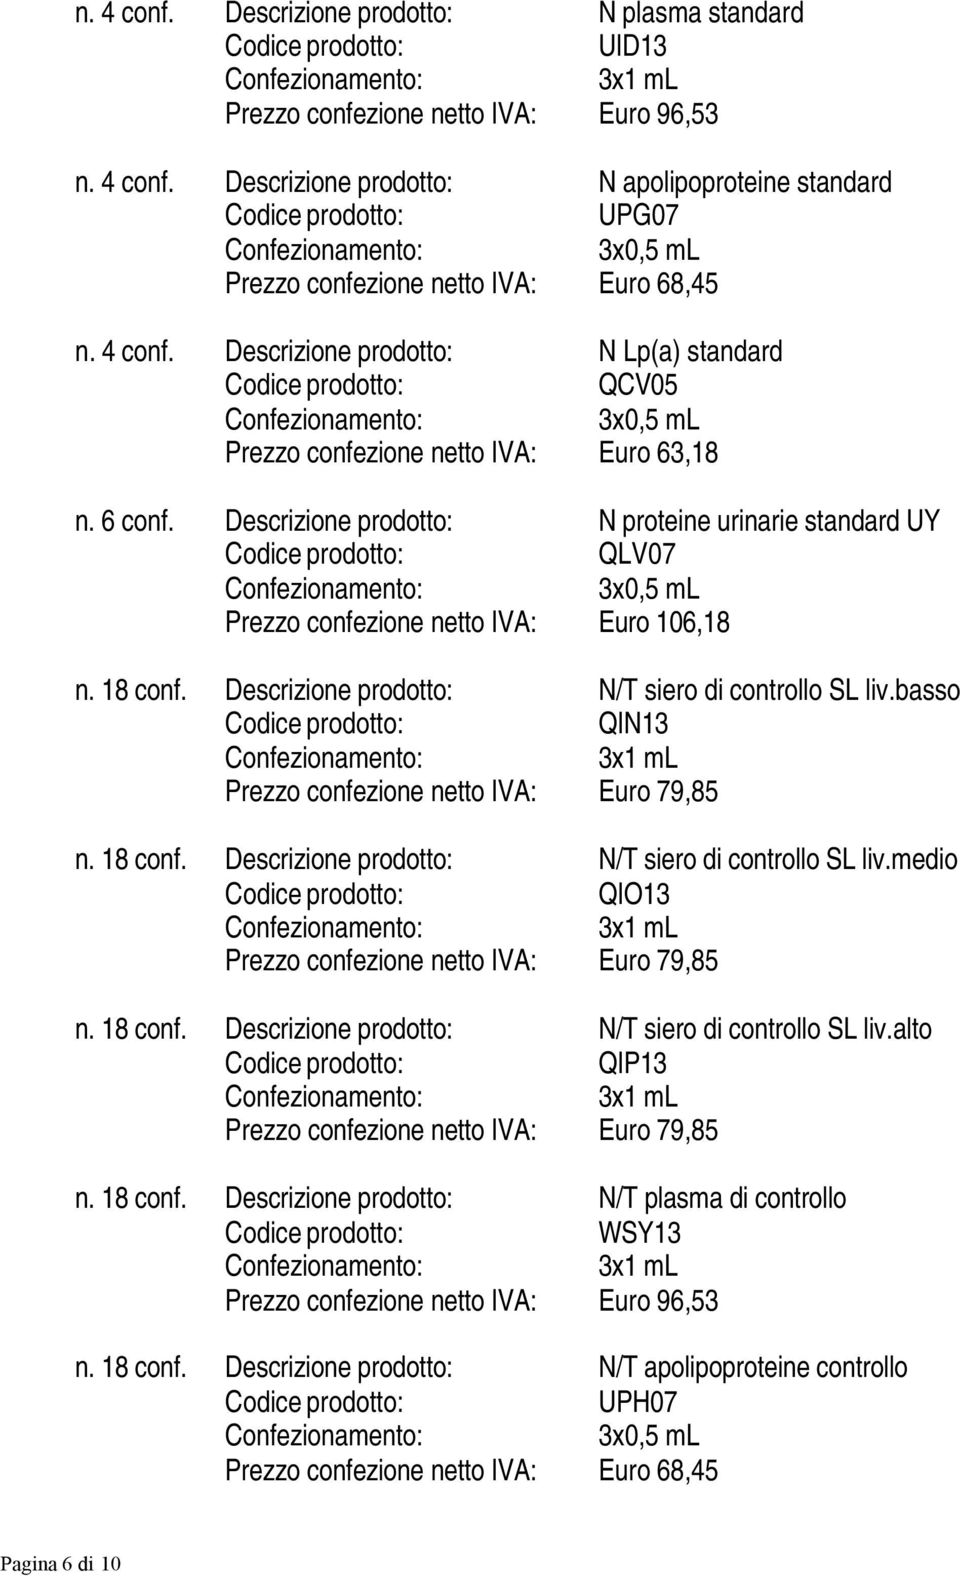 Descrizione prodotto: N proteine urinarie standard UY QLV07 3x0,5 ml Prezzo confezione netto IVA: Euro 106,18 n. 18 conf. Descrizione prodotto: N/T siero di controllo SL liv.